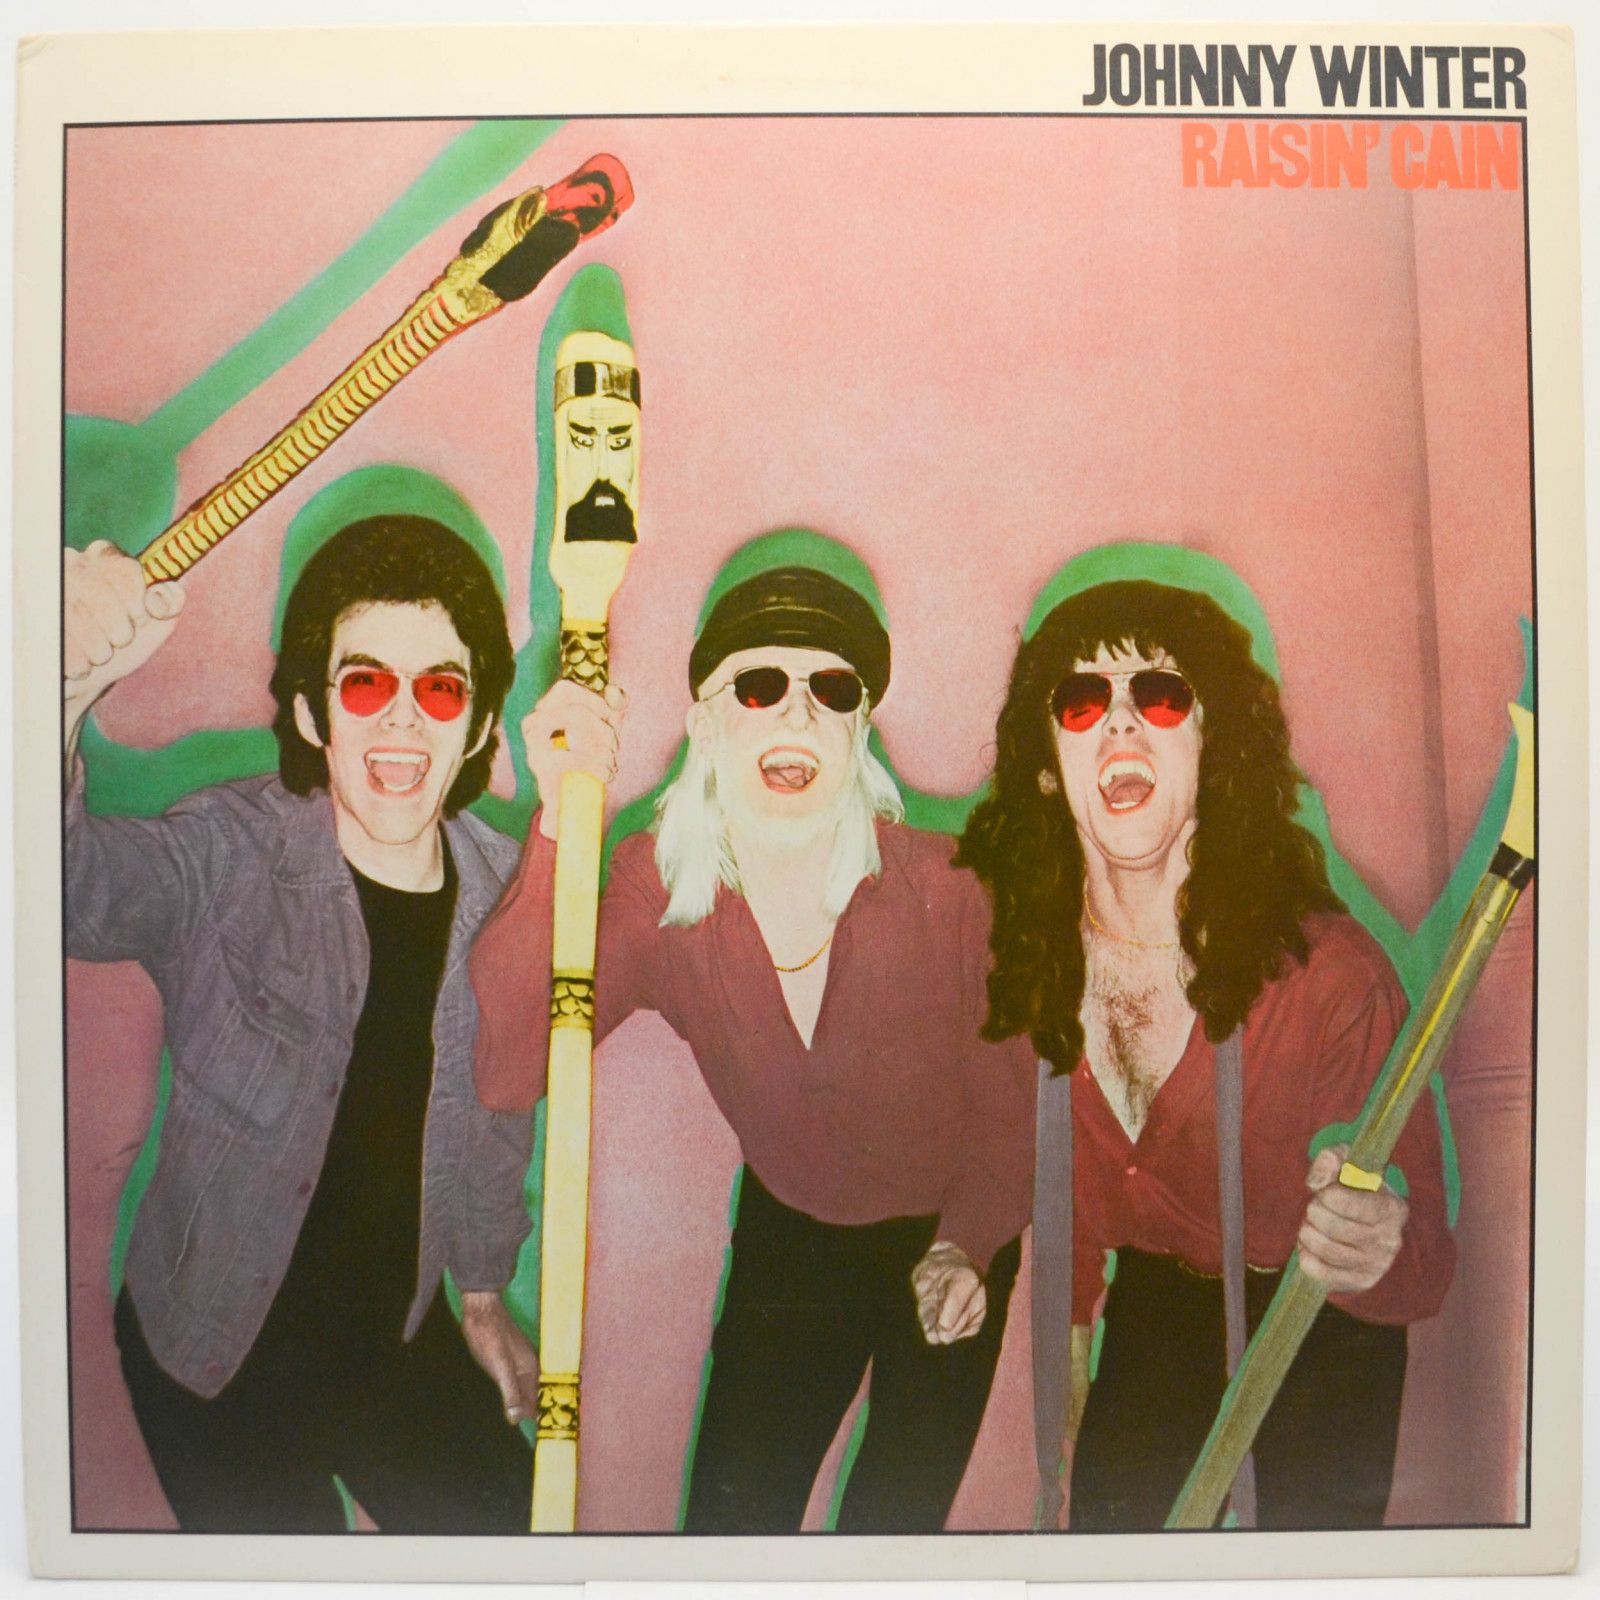 Johnny Winter — Raisin' Cain (1-st, USA), 1980